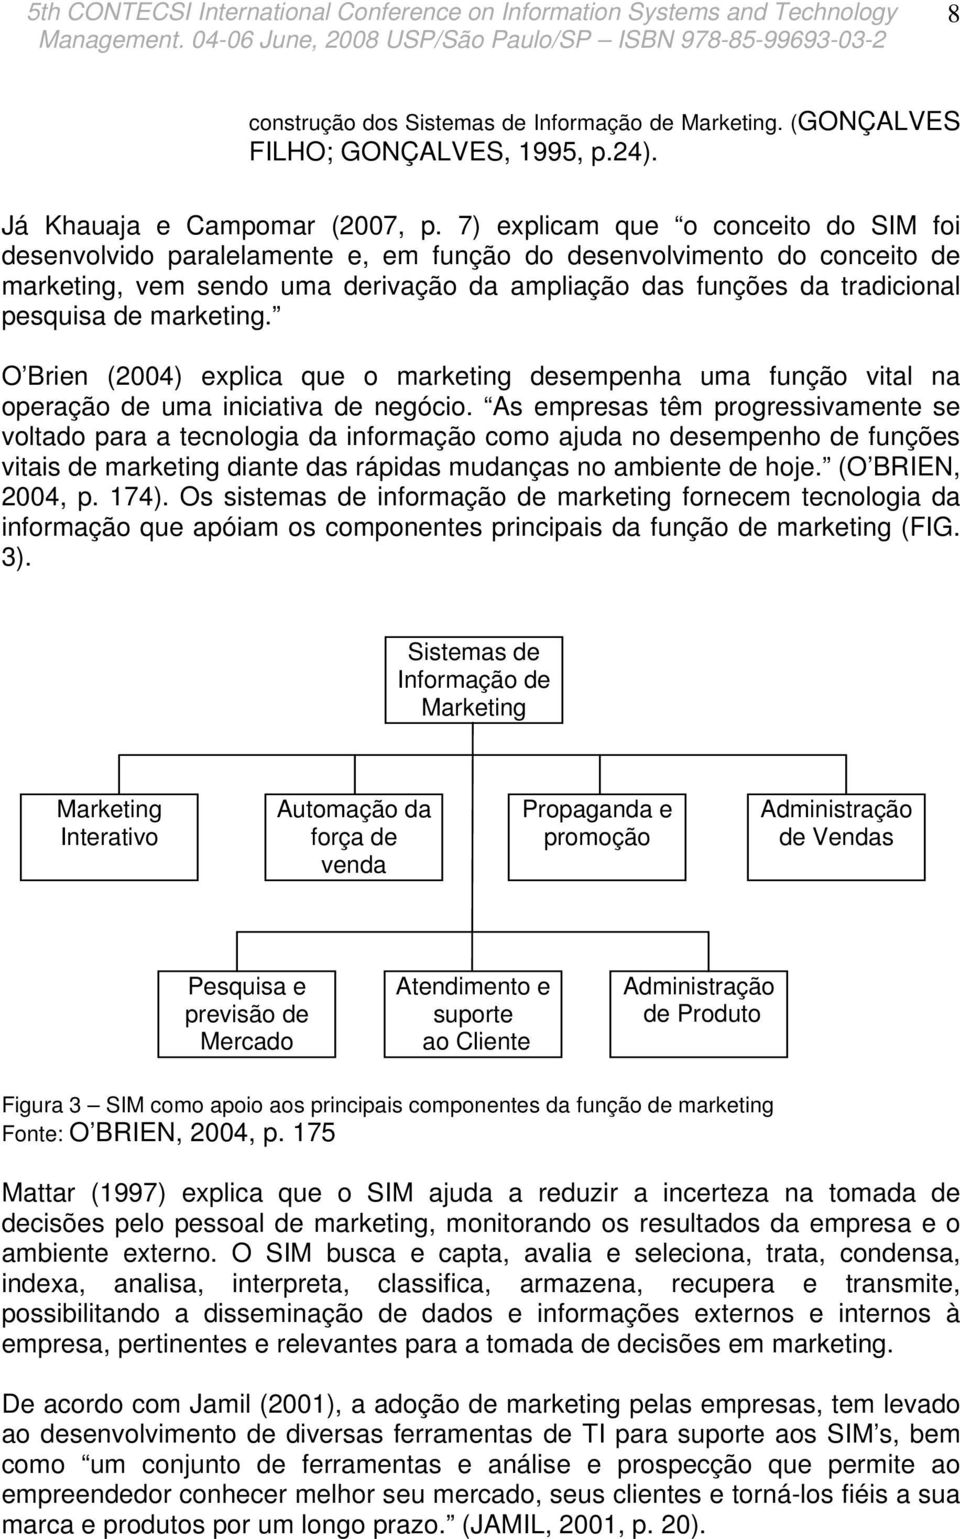 marketing. O Brien (2004) explica que o marketing desempenha uma função vital na operação de uma iniciativa de negócio.